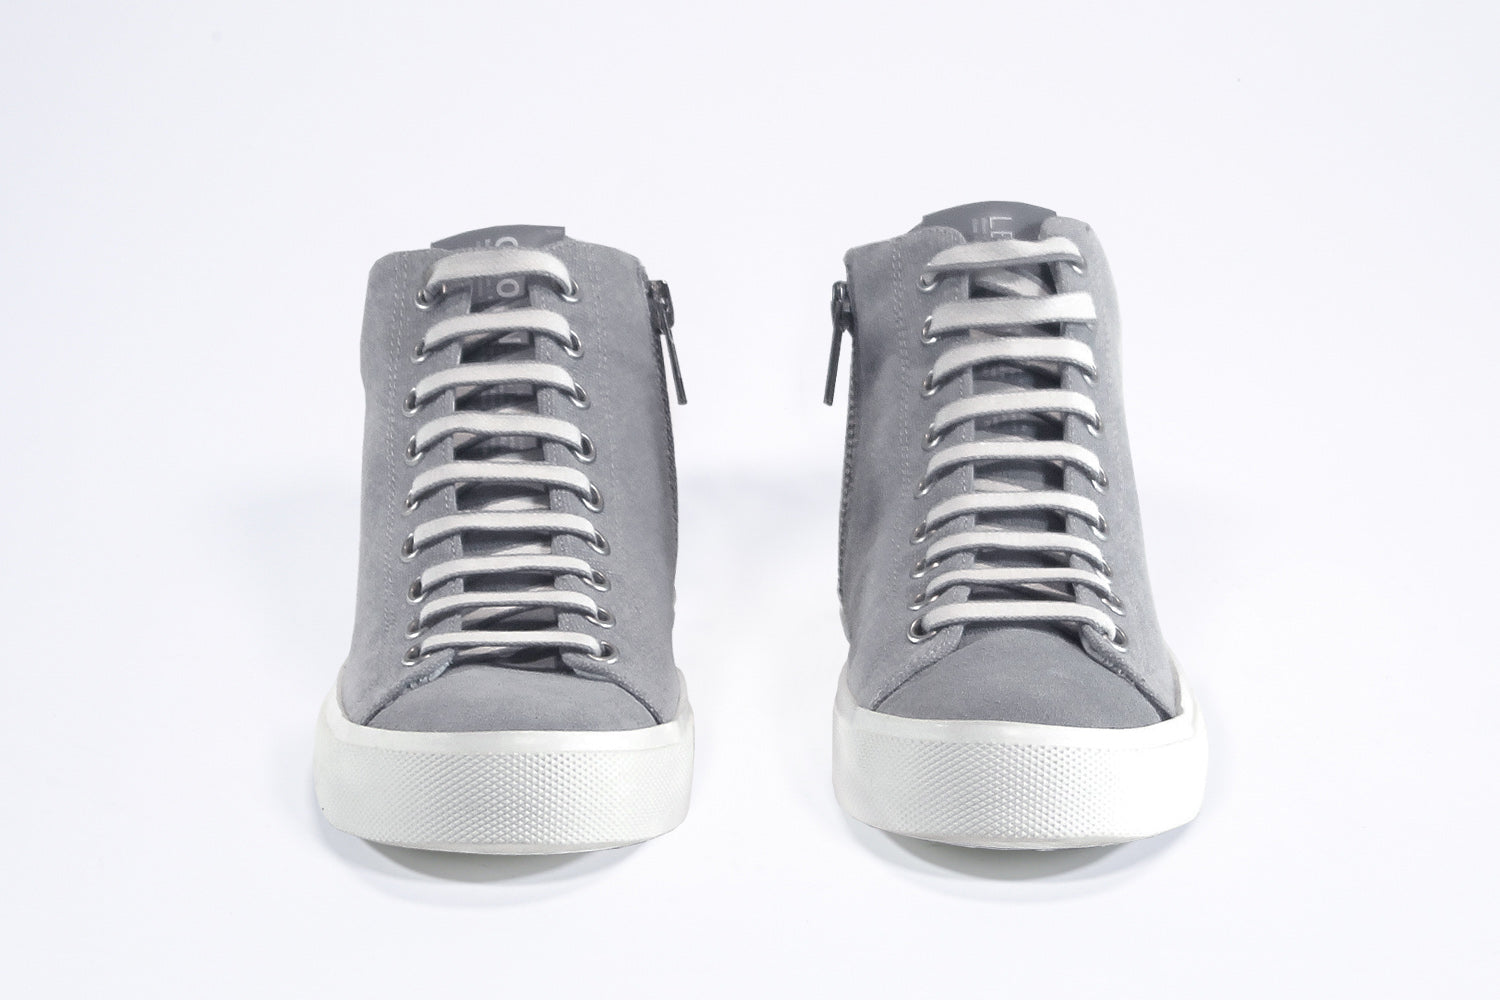 Vorderansicht von sneaker mit durchgehendem grauem Canvas-Obermaterial, innerem Reißverschluss und weißer Sohle.